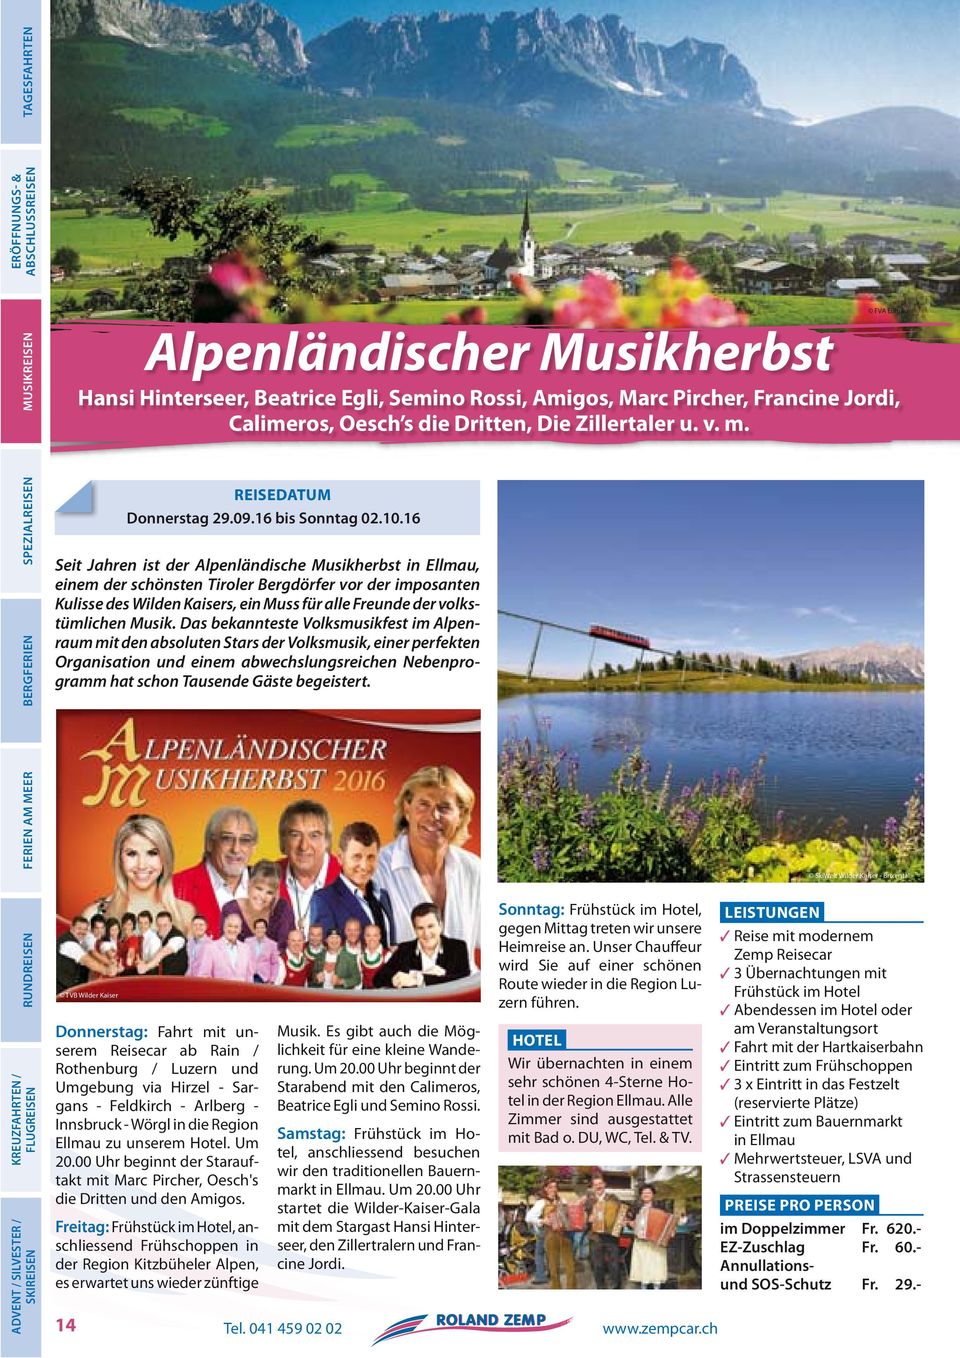 16 Seit Jahren ist der Alpenländische Musikherbst in Ellmau, einem der schönsten Tiroler Bergdörfer vor der imposanten Kulisse des Wilden Kaisers, ein Muss für alle Freunde der volkstümlichen Musik.